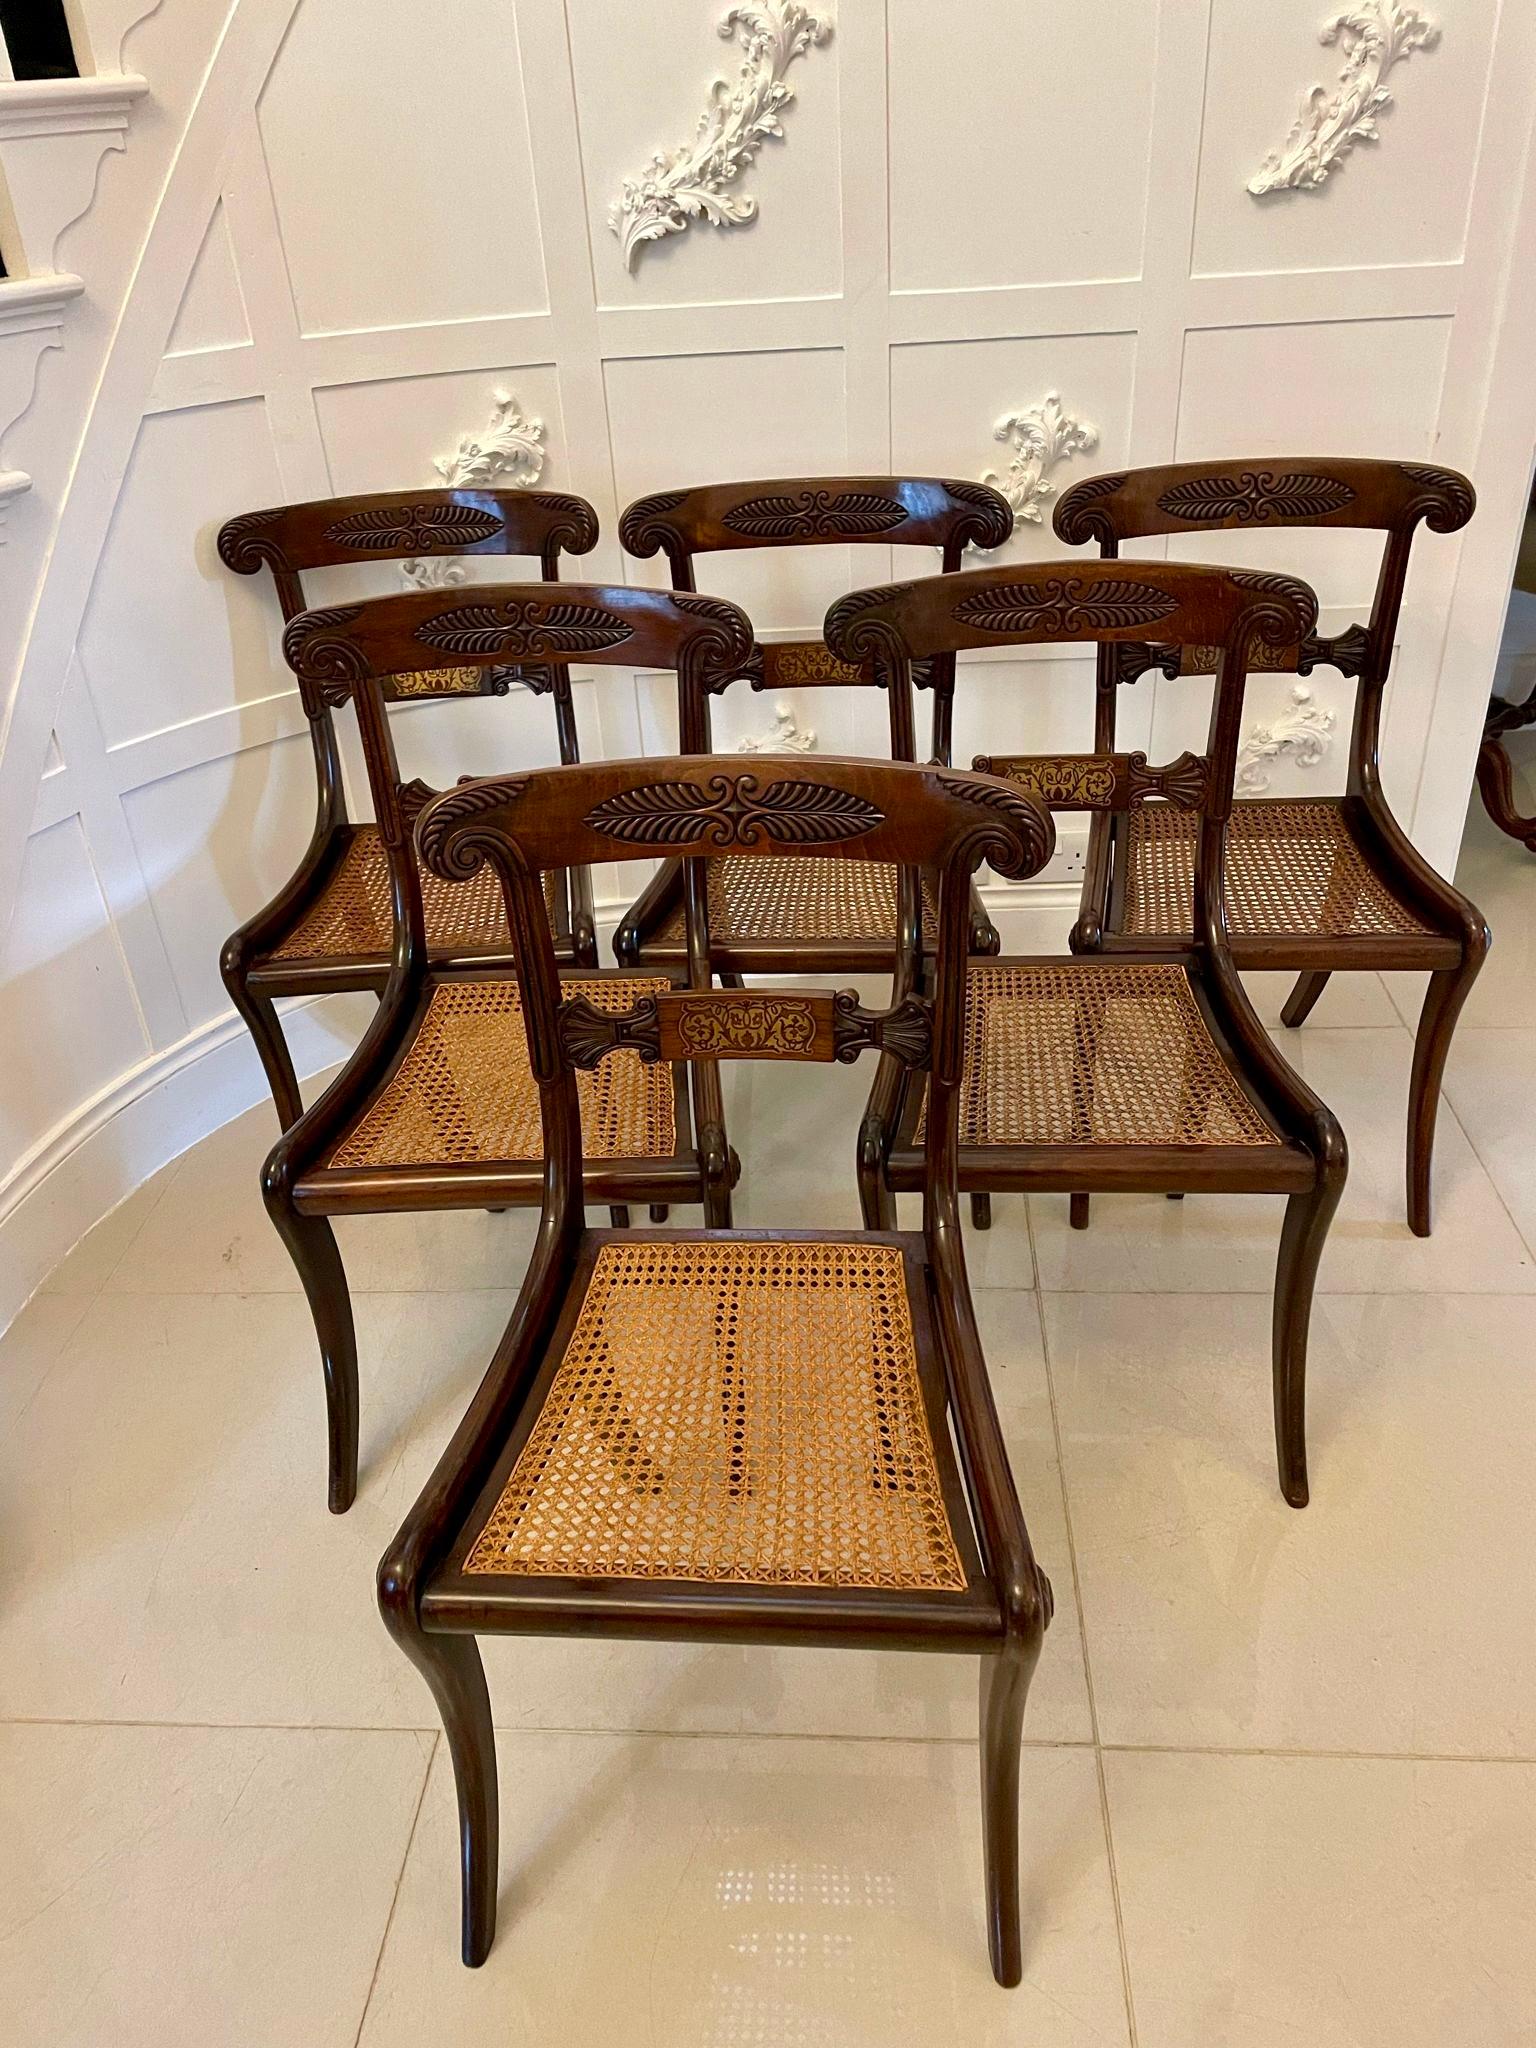 Feine Qualität Satz von 6 antiken Regency Palisander Messing eingelegt Esszimmerstühle mit einer feinen Qualität geschnitzt Palisander zurück mit einem schön eingelegten Messing und geschnitztem Palisander Splat in der Mitte, original Rohrsitze